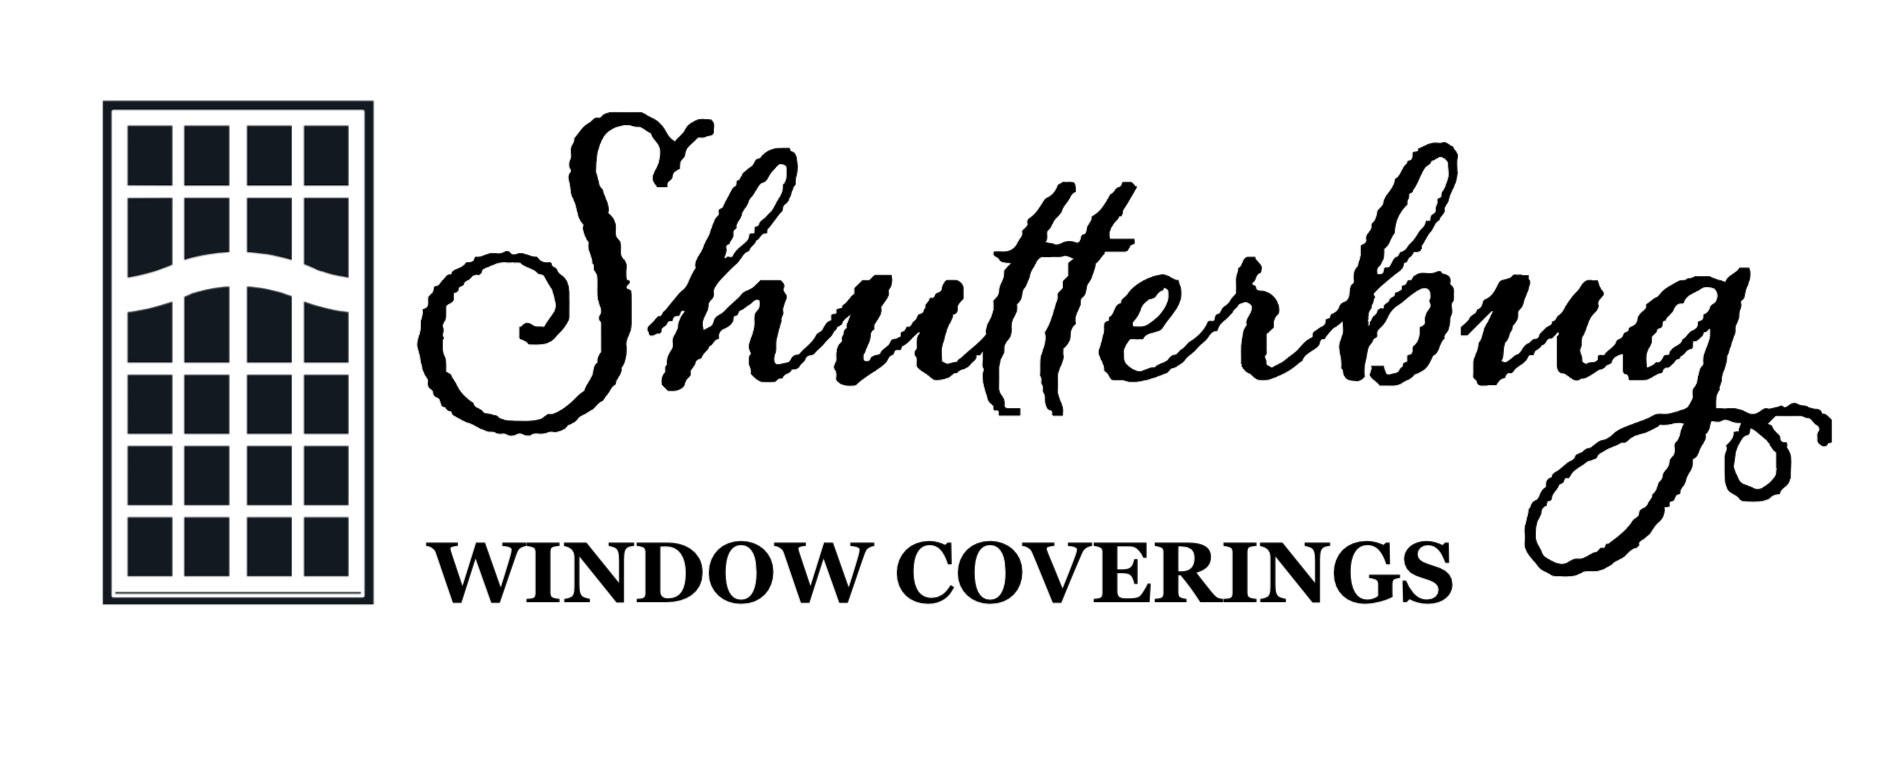 Shutter Bug window coverings